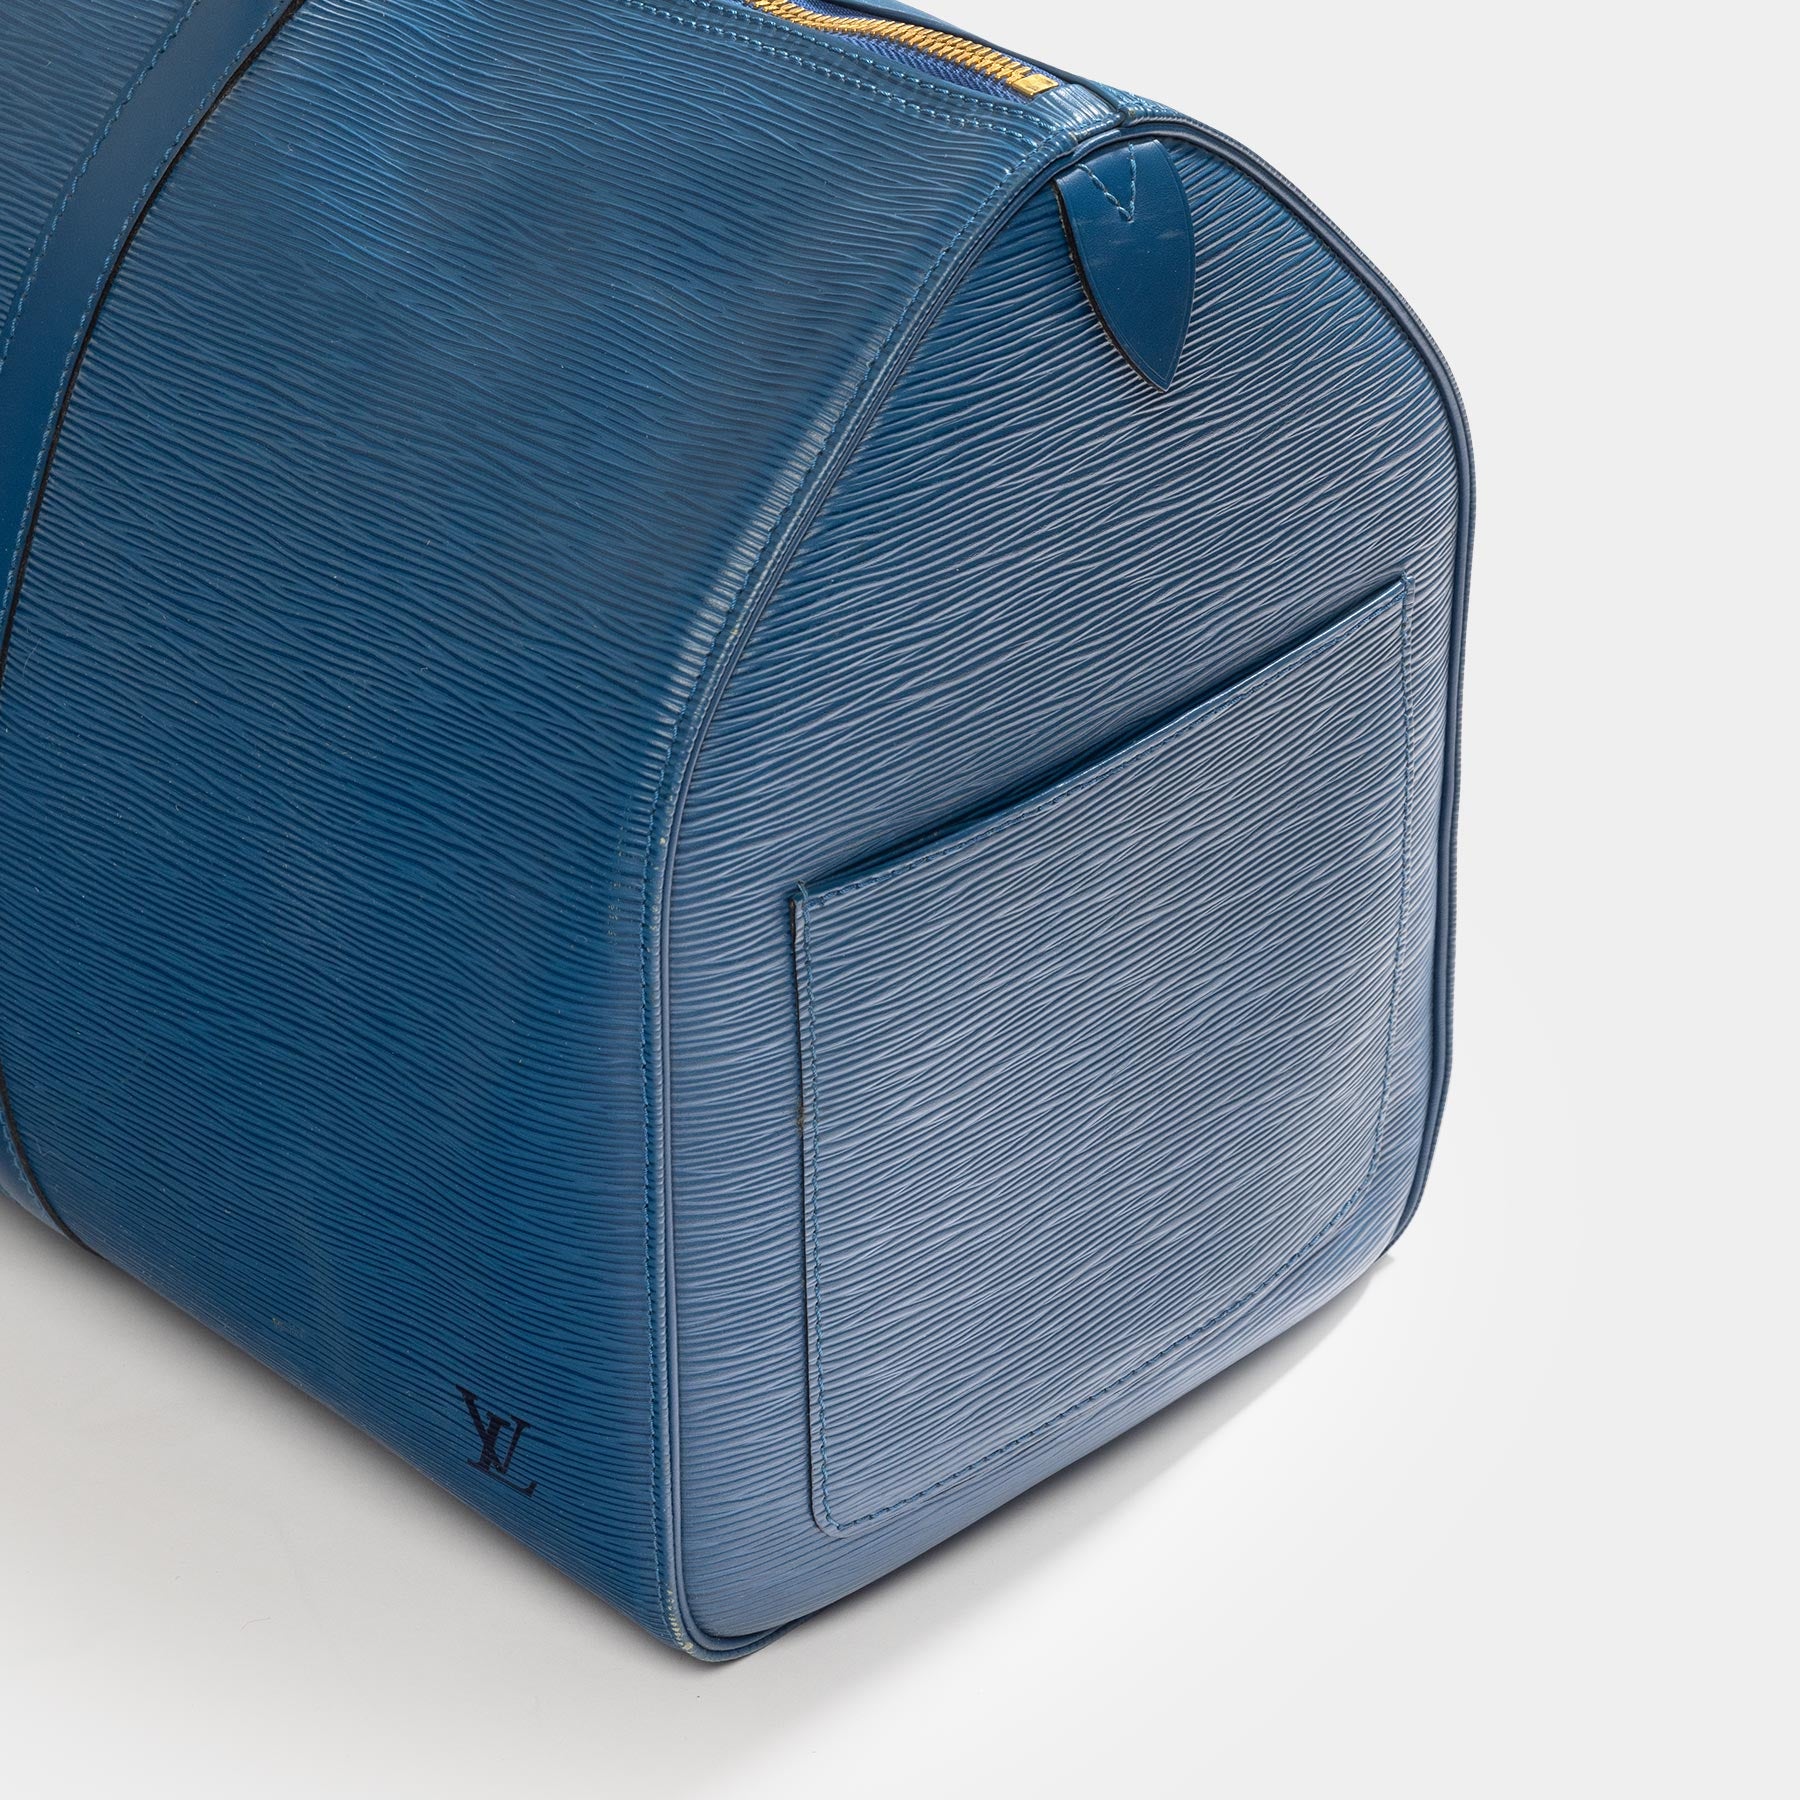 Louis Vuitton Blue LV Cup Sac Plein Air Long Keepall Bag 1015lv43